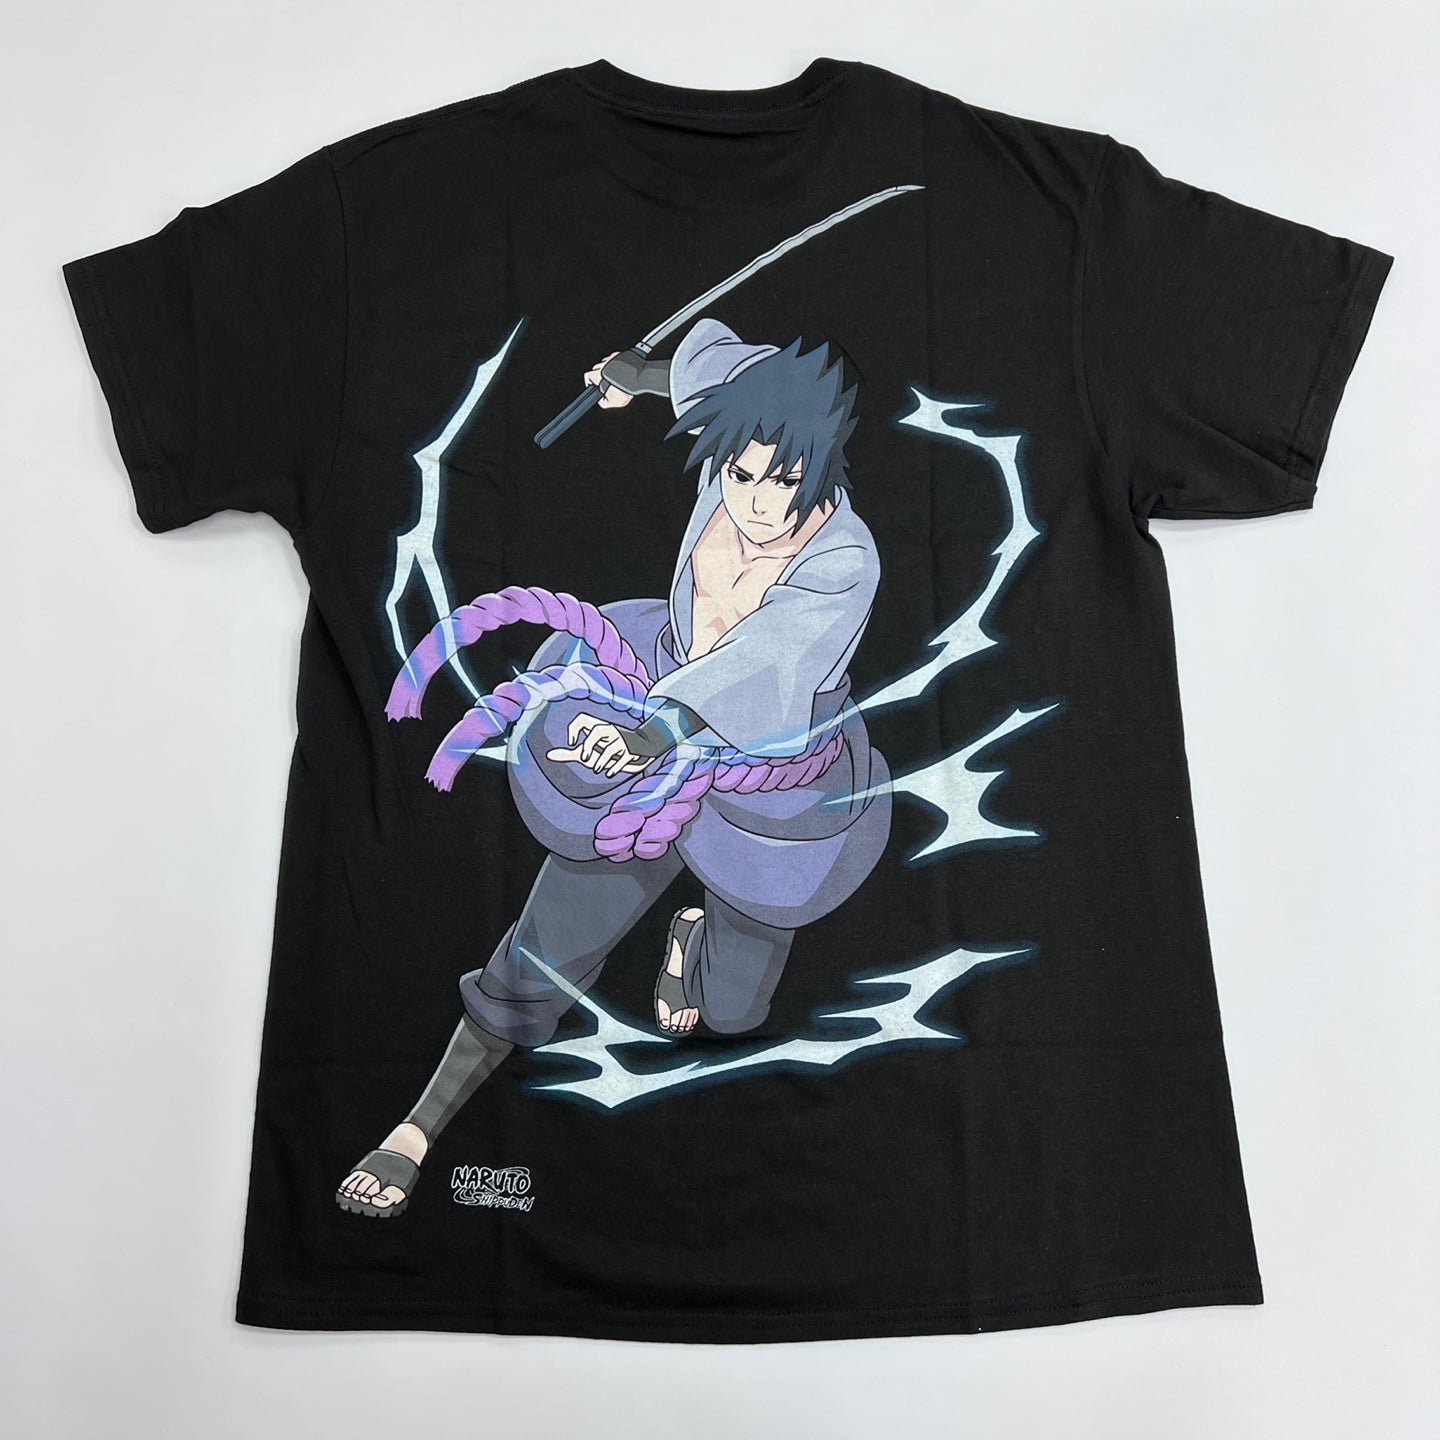 REASON Naruto Rashingan Graphic T-Shirt